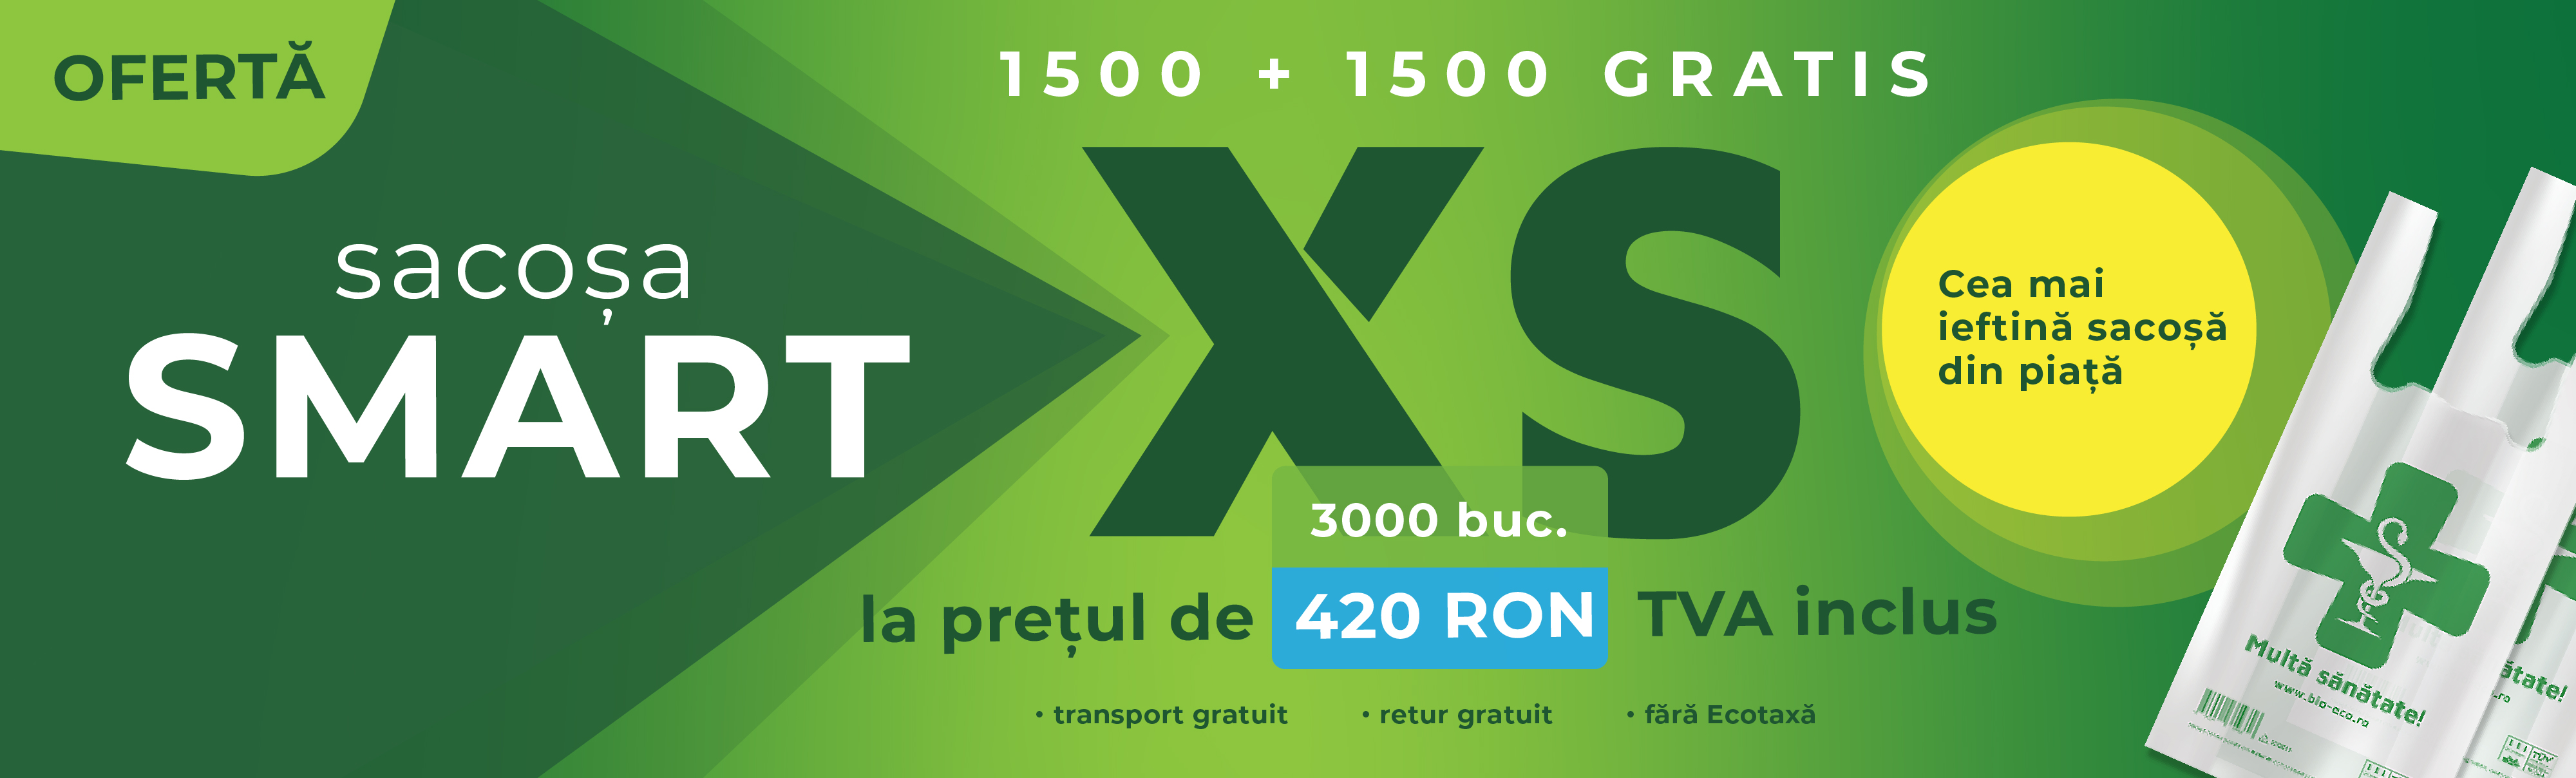 Smart XS 1500+1500 Gratis